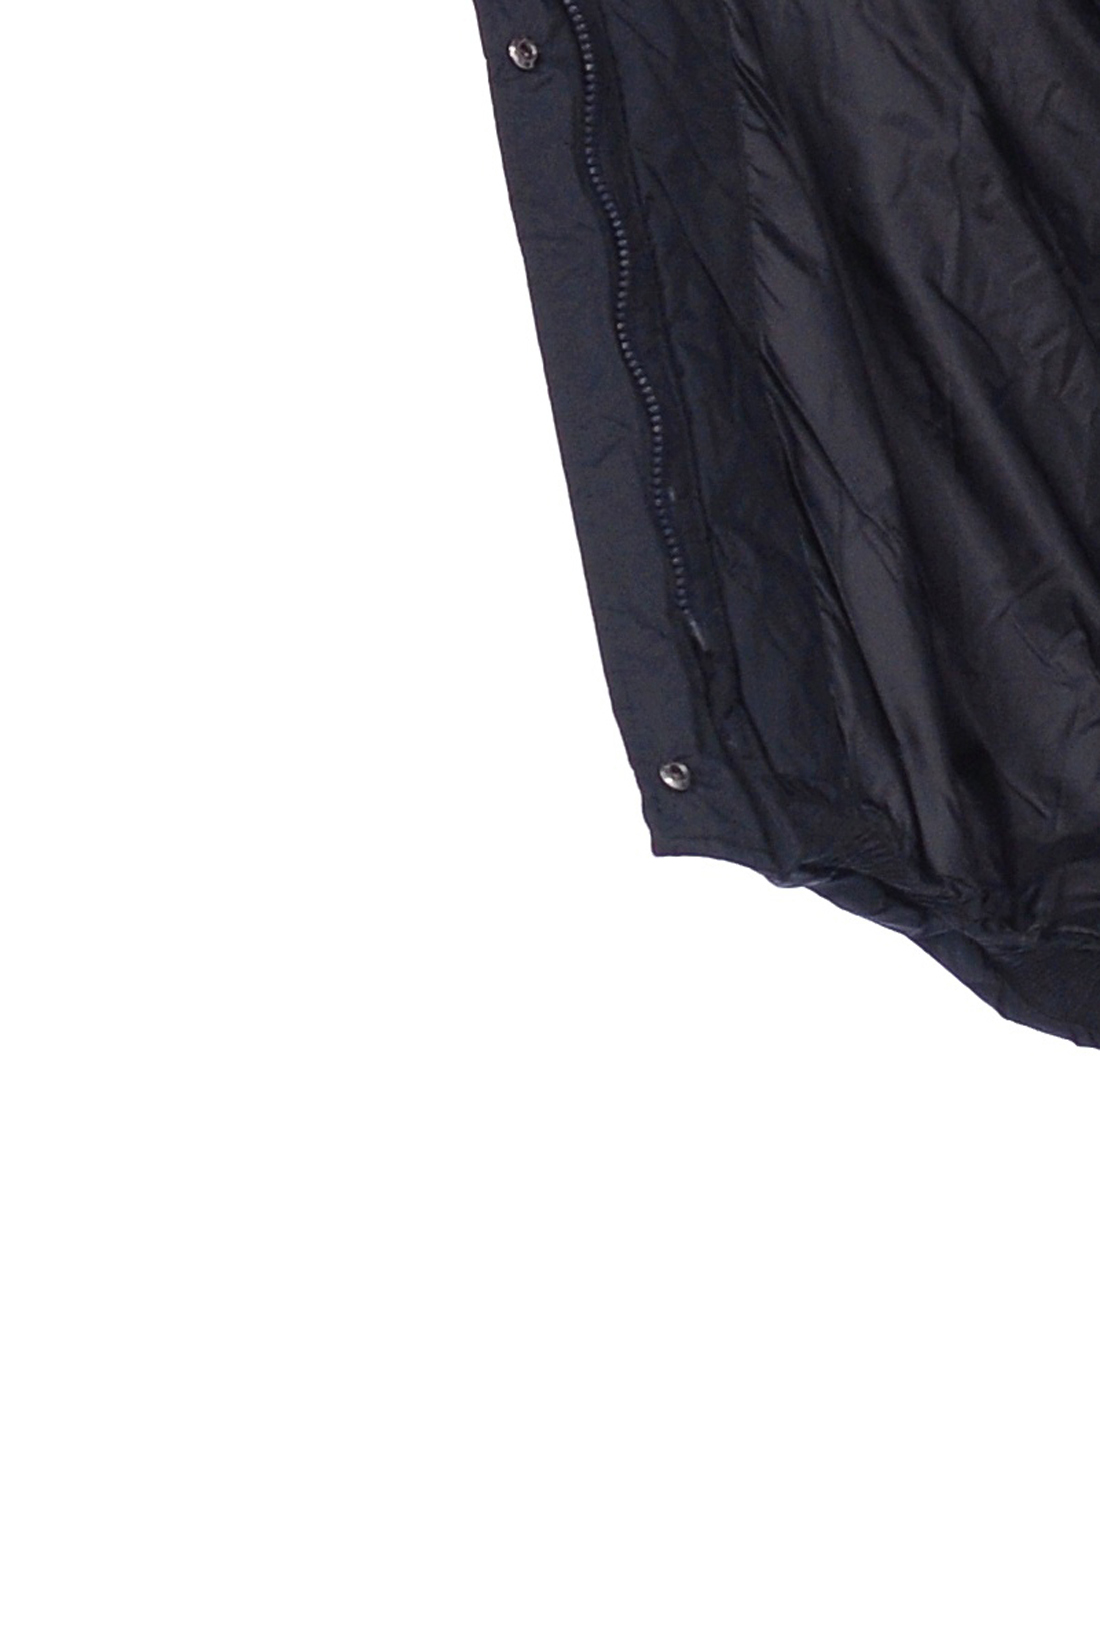 Куртка с молниями по бокам (арт. baon B038530), размер L, цвет черный Куртка с молниями по бокам (арт. baon B038530) - фото 4